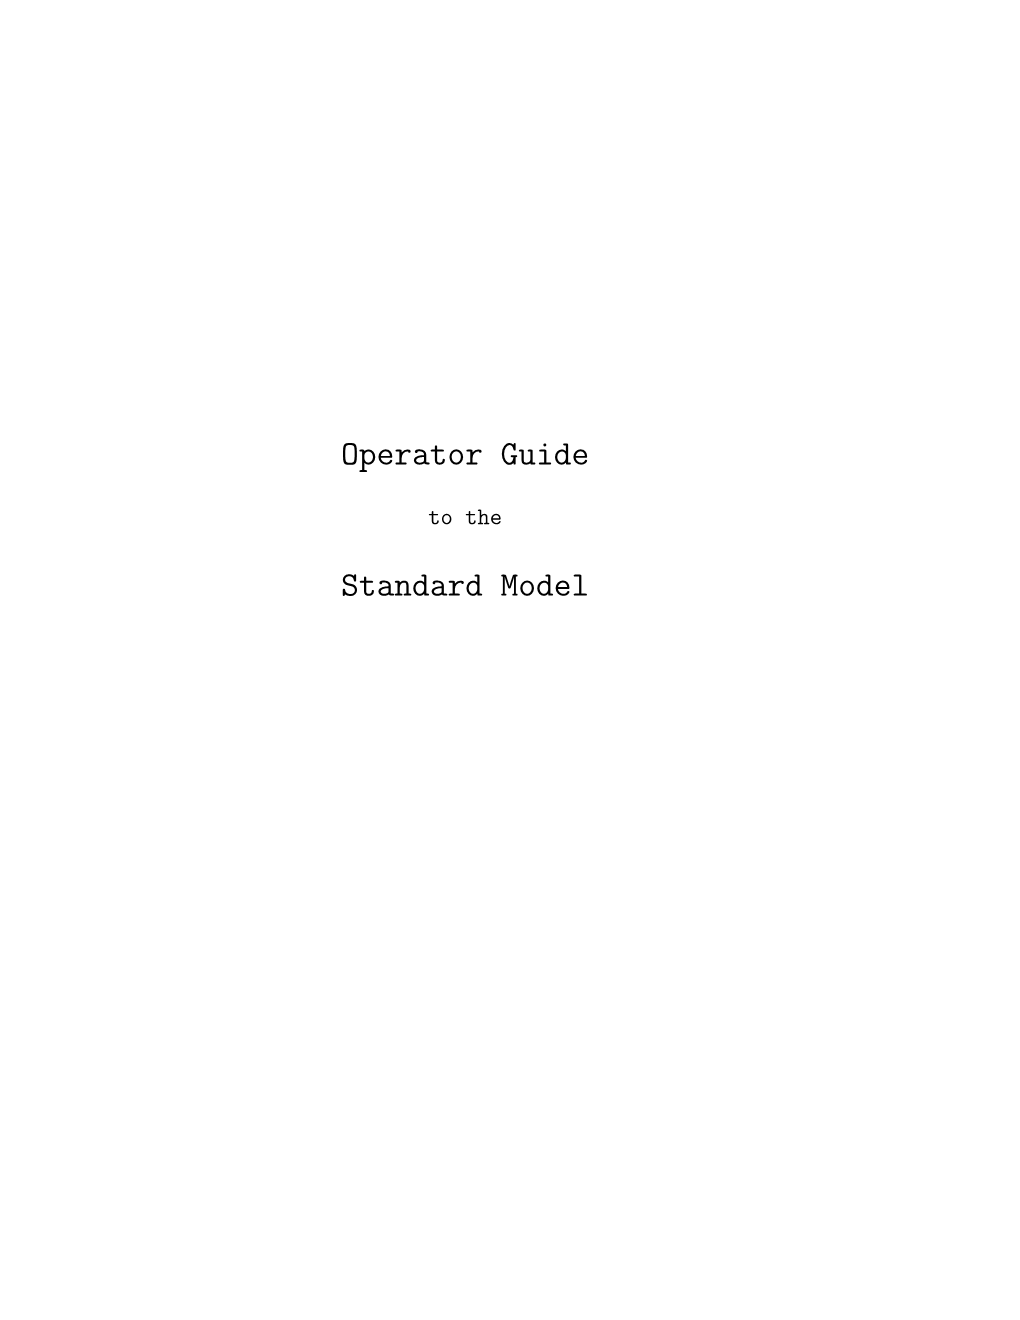 Operator Guide, 144+ Pages, Pdf, Latex /Memoir Format